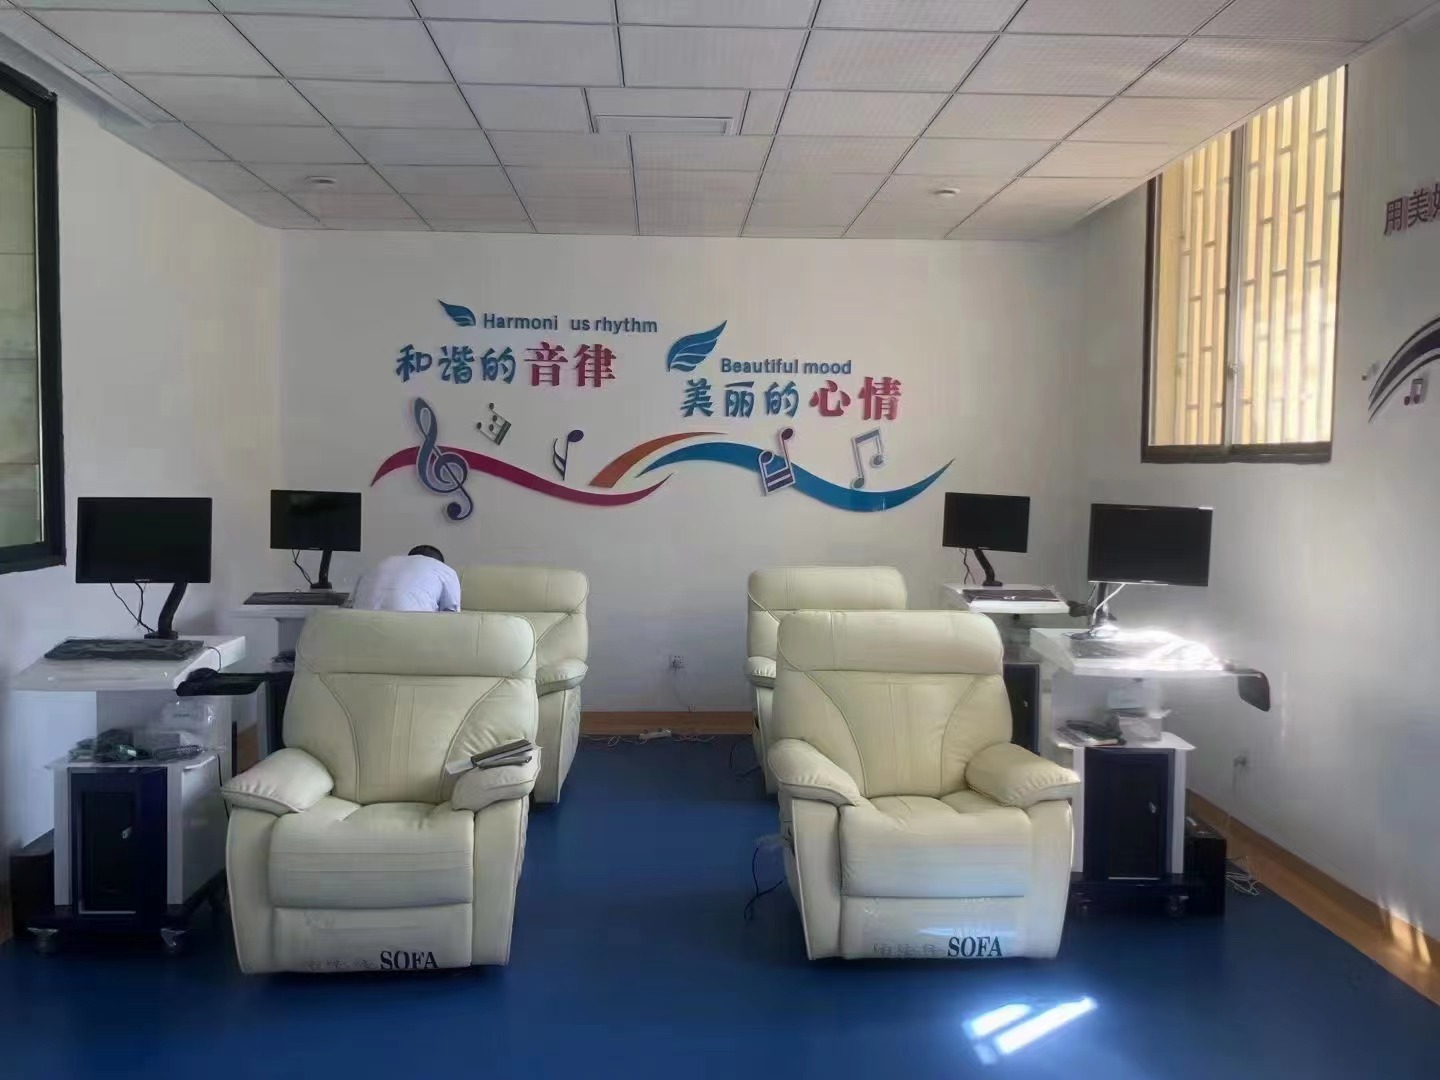 遂宁市第二中学校心理成长中心建设